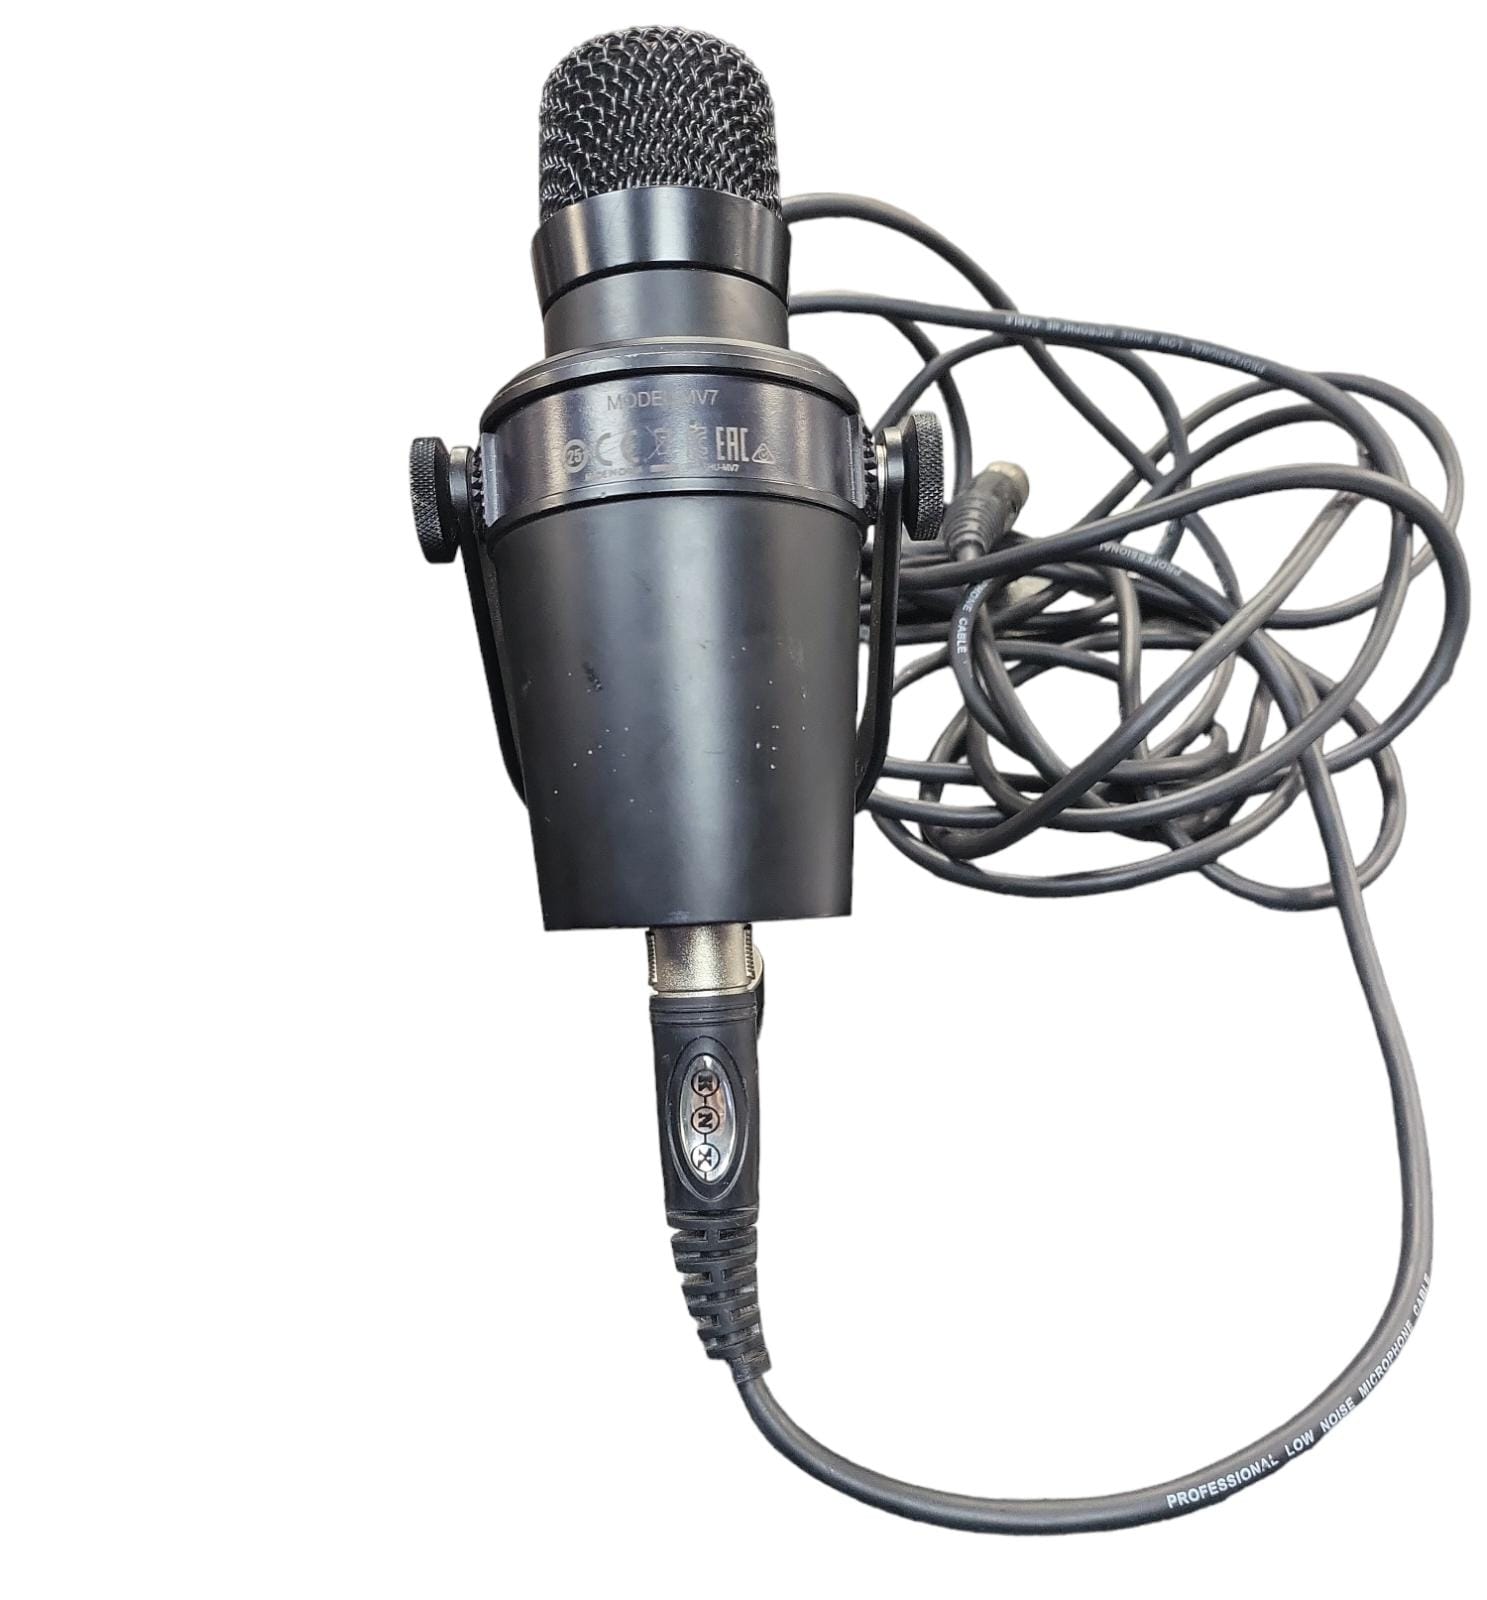 MV7 pro podcast microphone